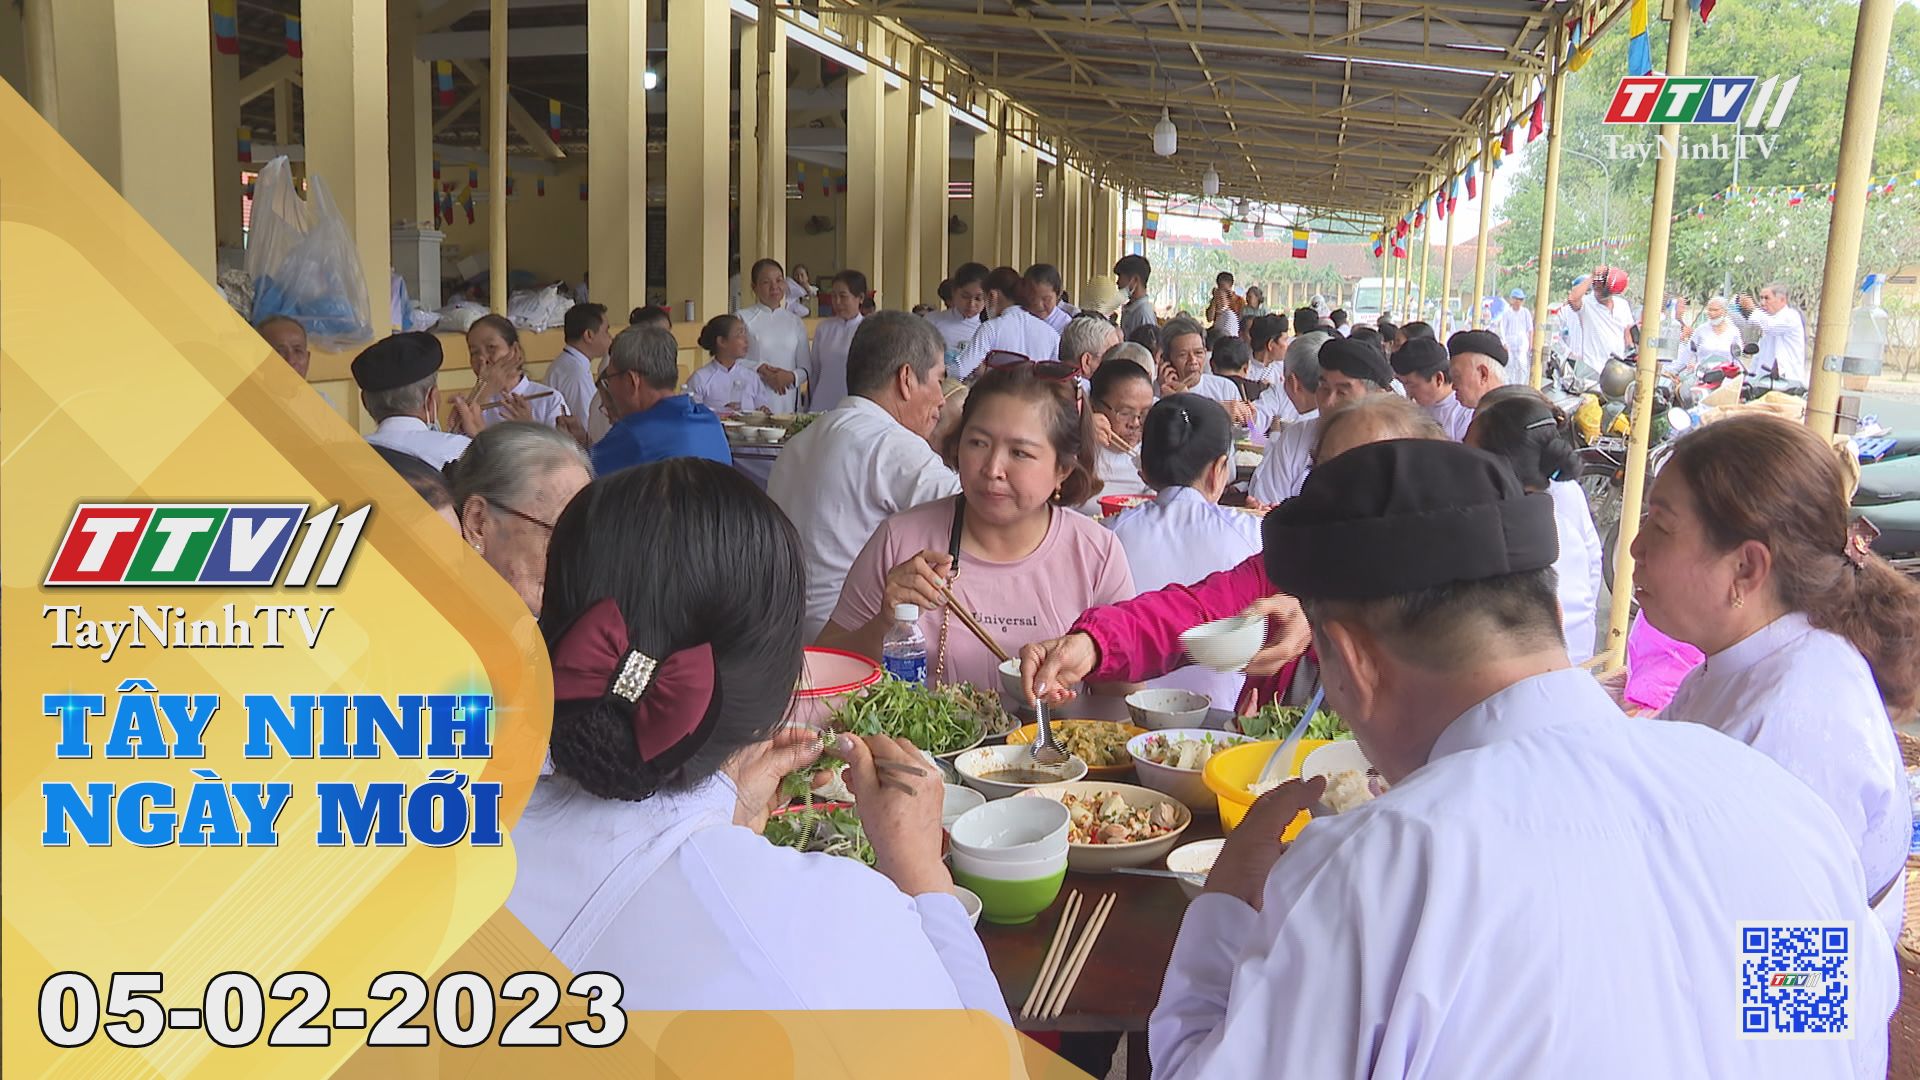 Tây Ninh ngày mới 05-02-2023 | Tin tức hôm nay | TayNinhTV